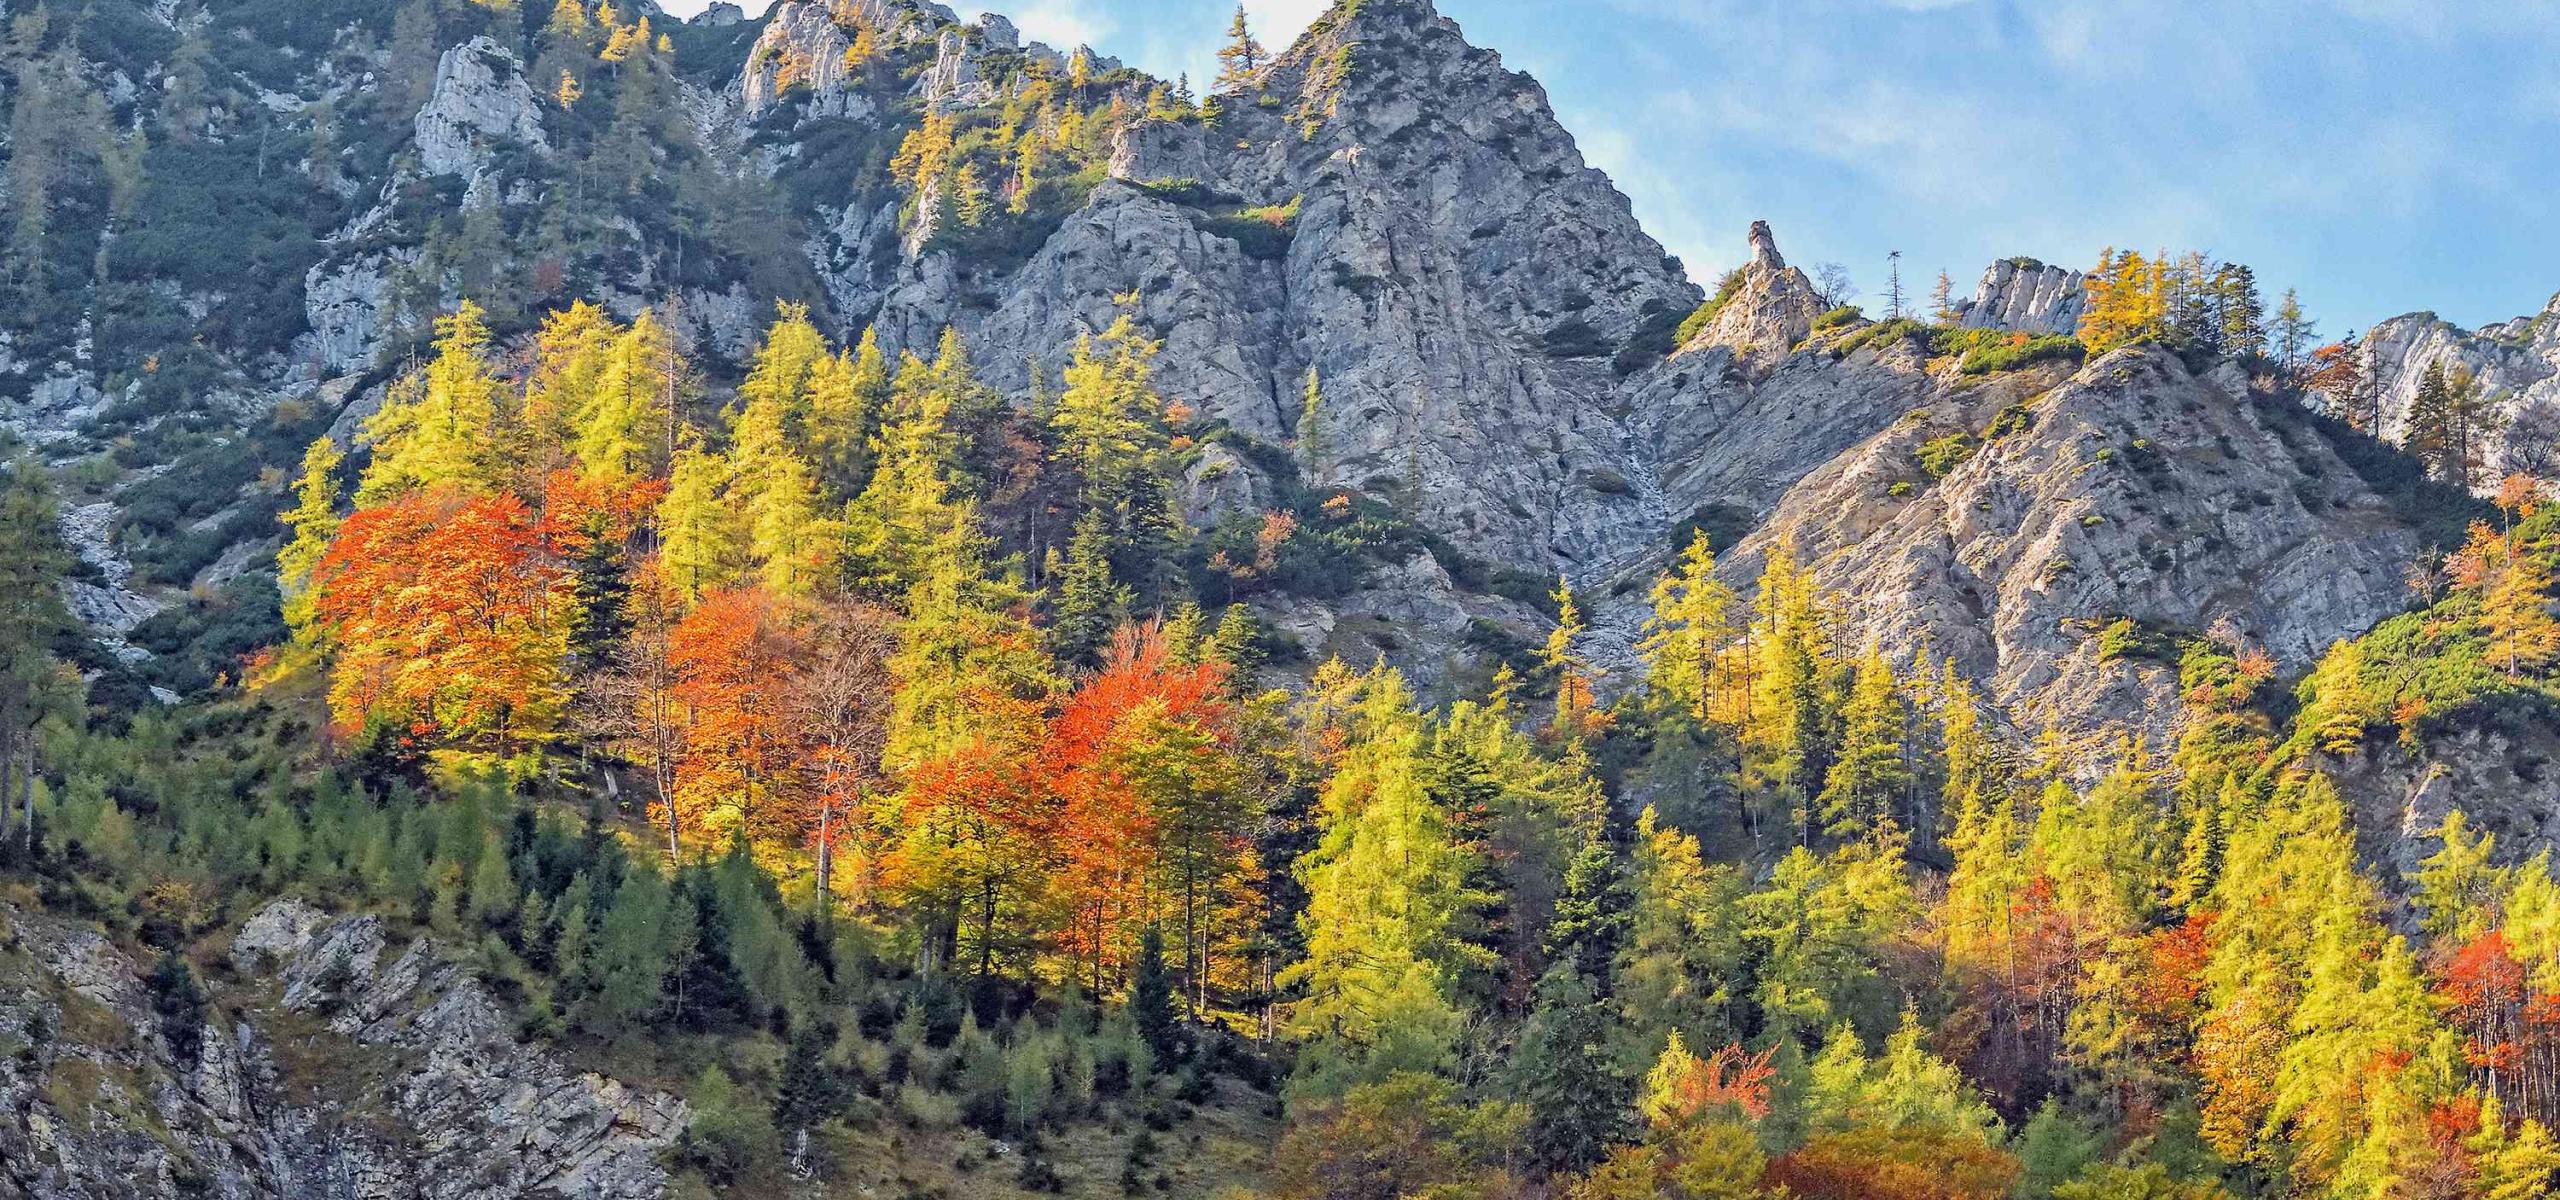 Herbstlich gefärbter Buchen-Lärchenwald wächst Inselartig mitten in steilem Felsgelände